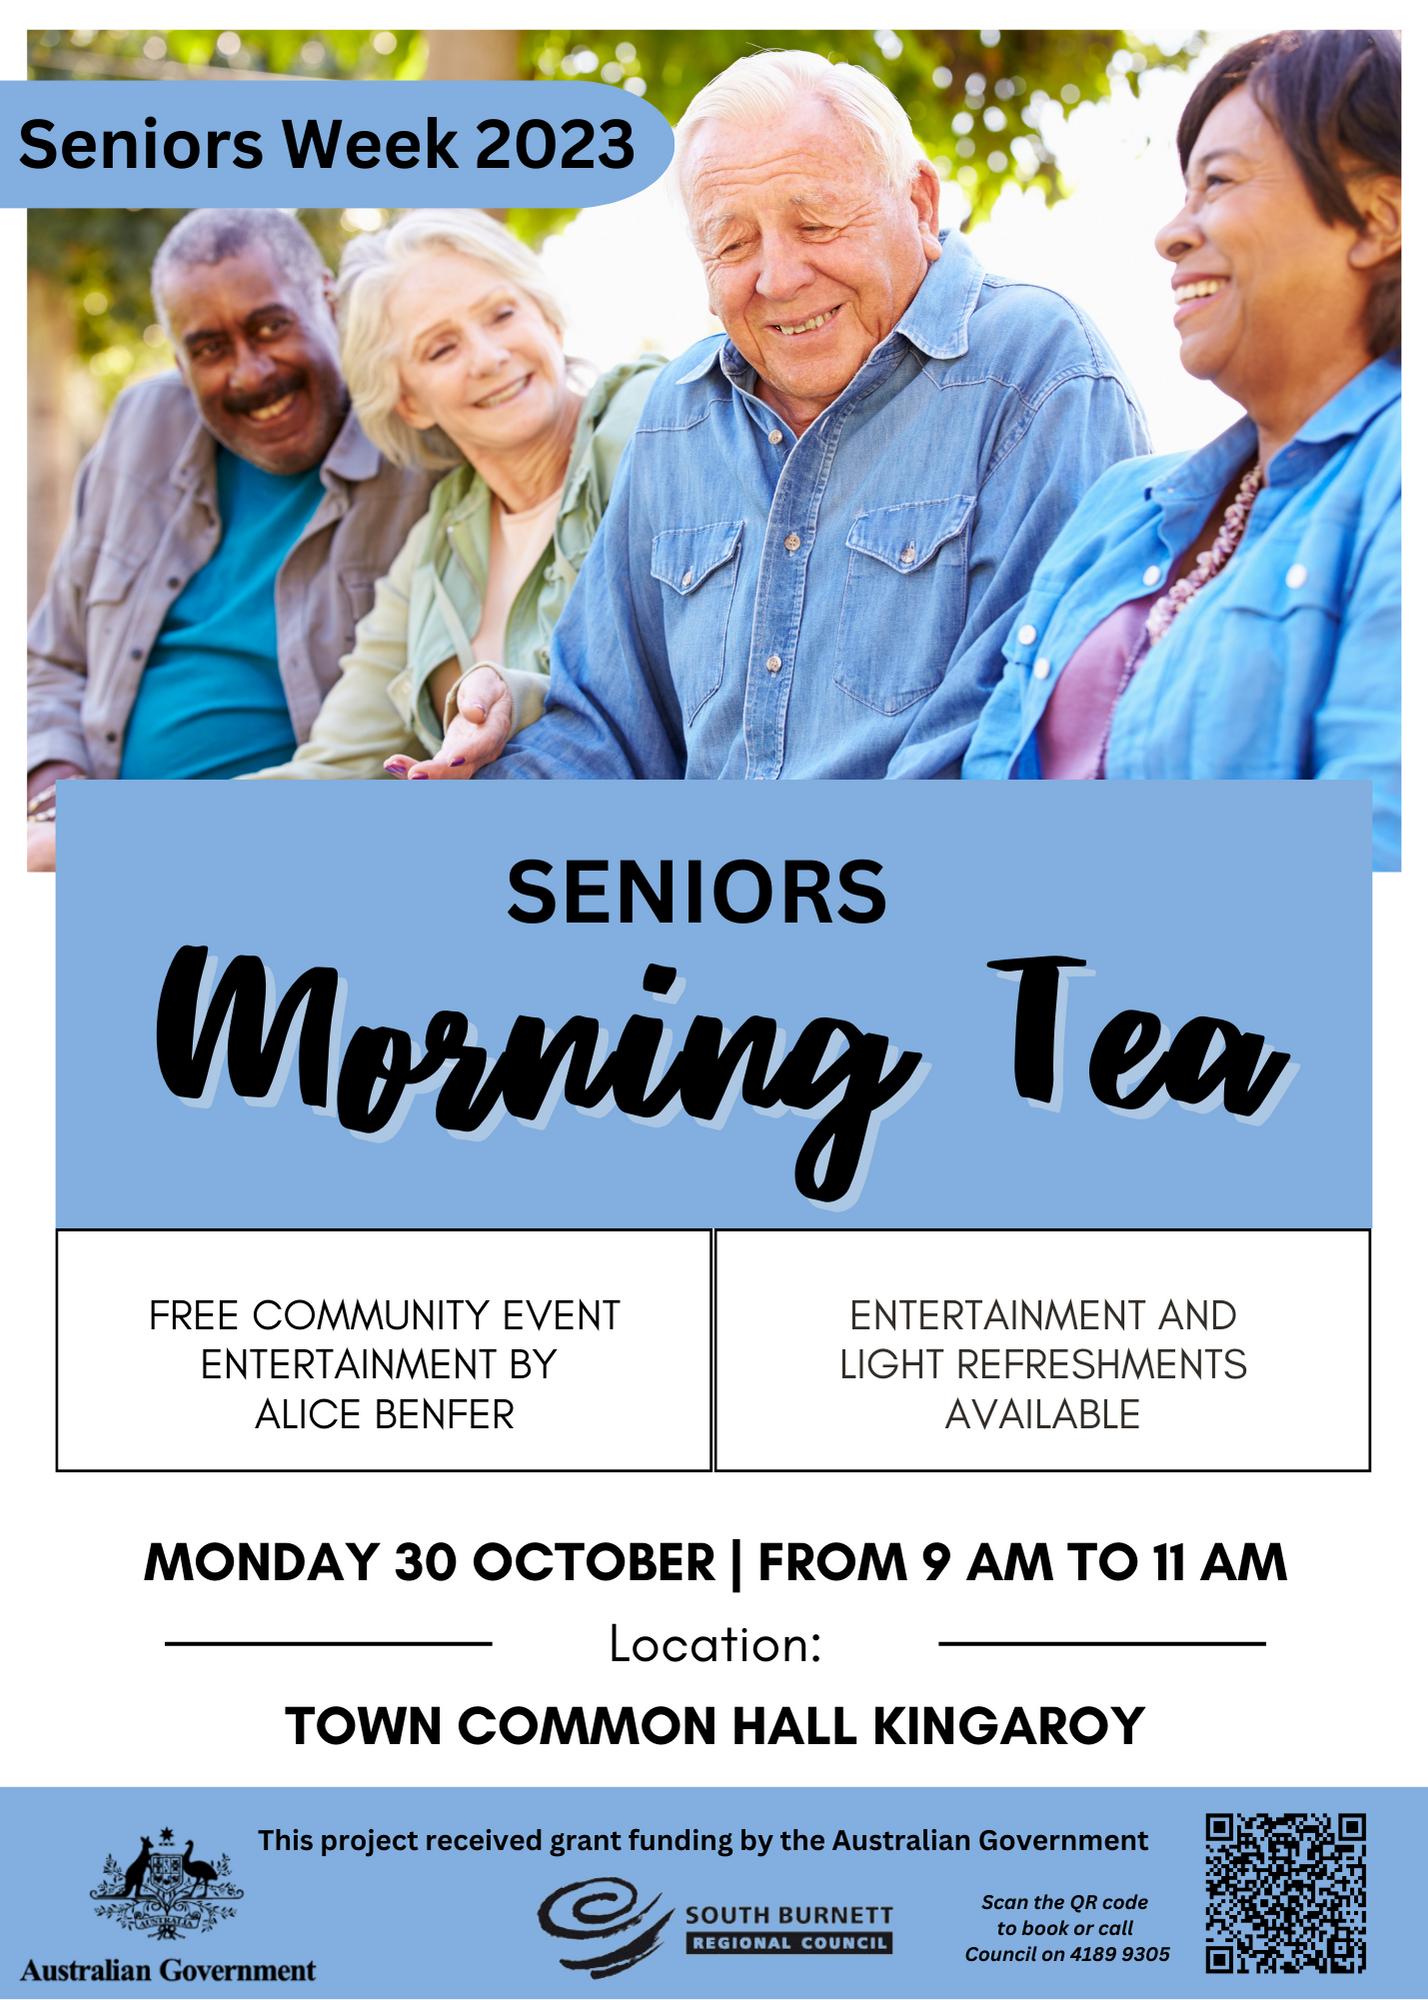 10 10 23 Seniors week 2023 morning tea flyer